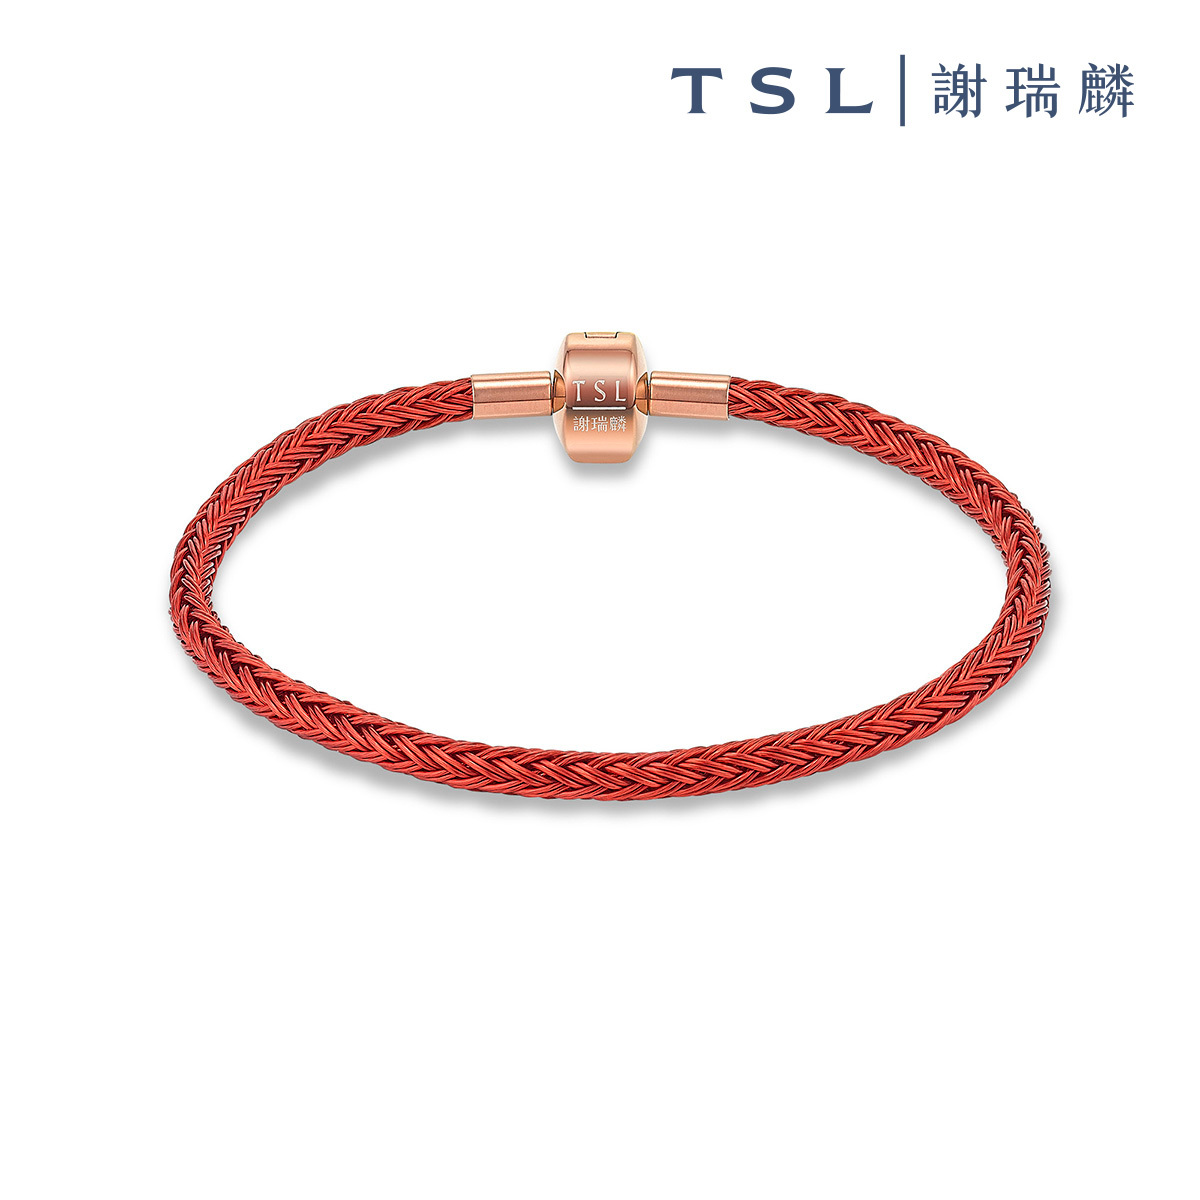 紅色精鋼手繩 (16cm)